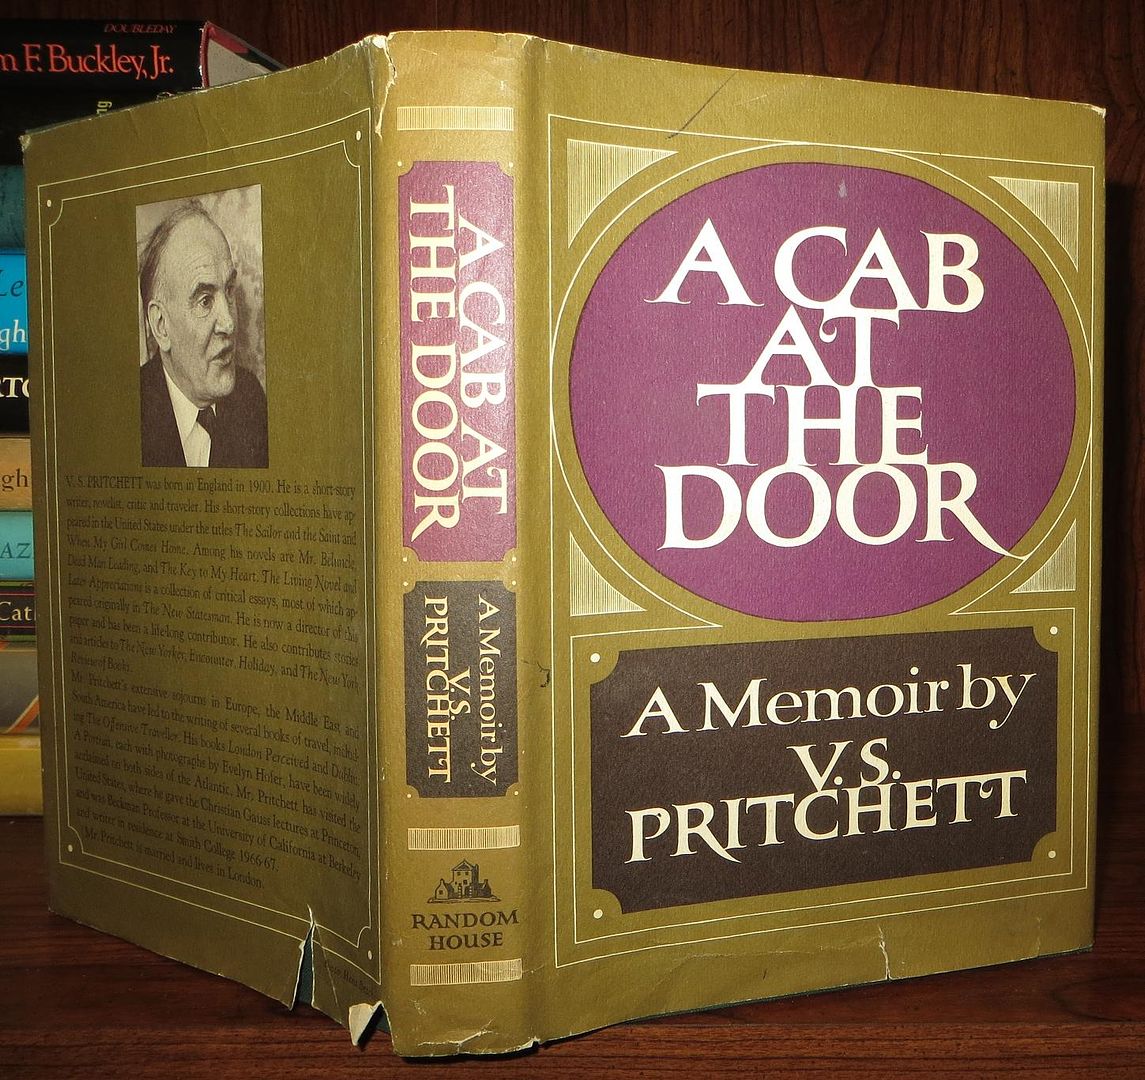 PRITCHETT, V. S. - A Cab at the Door